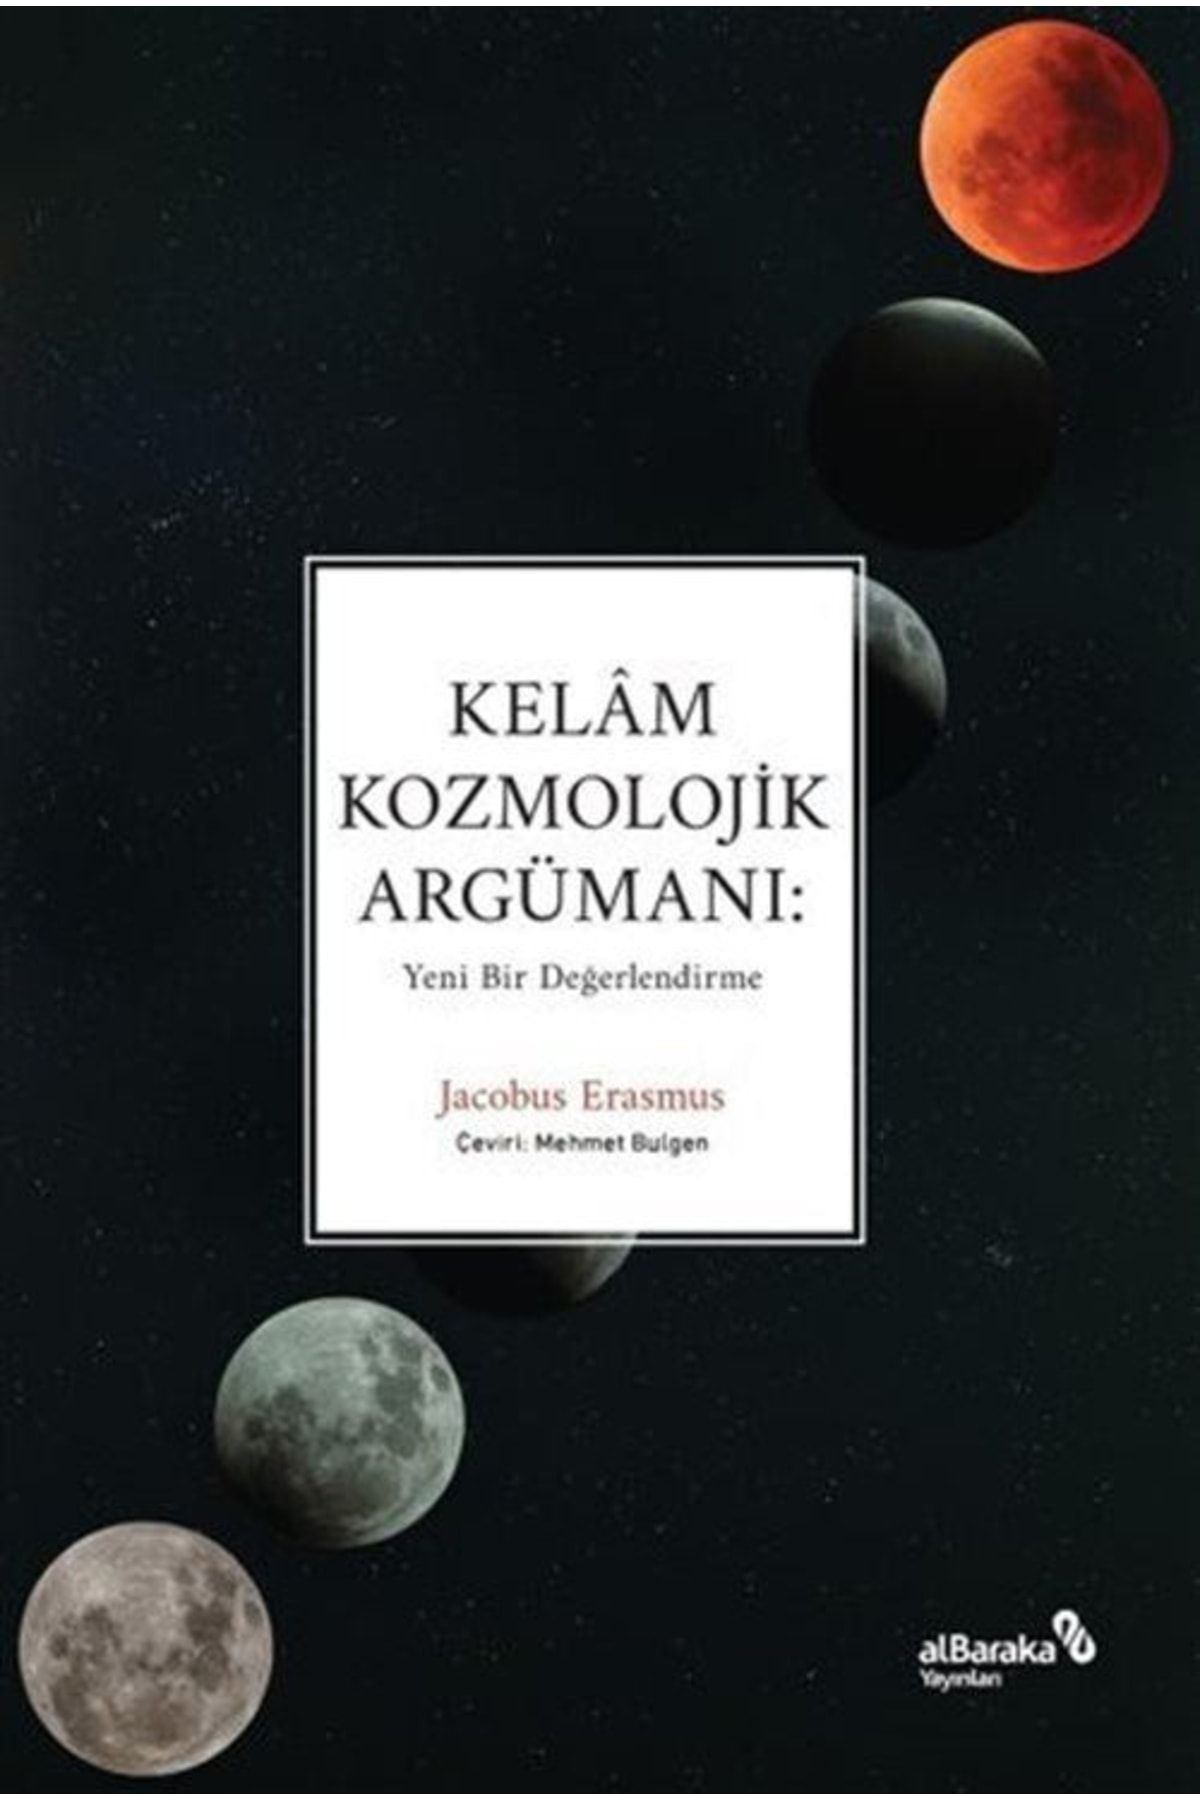 Albaraka Yayınları Kelam Kozmolojik Argümanı: Yeni Bir Değerlendirme